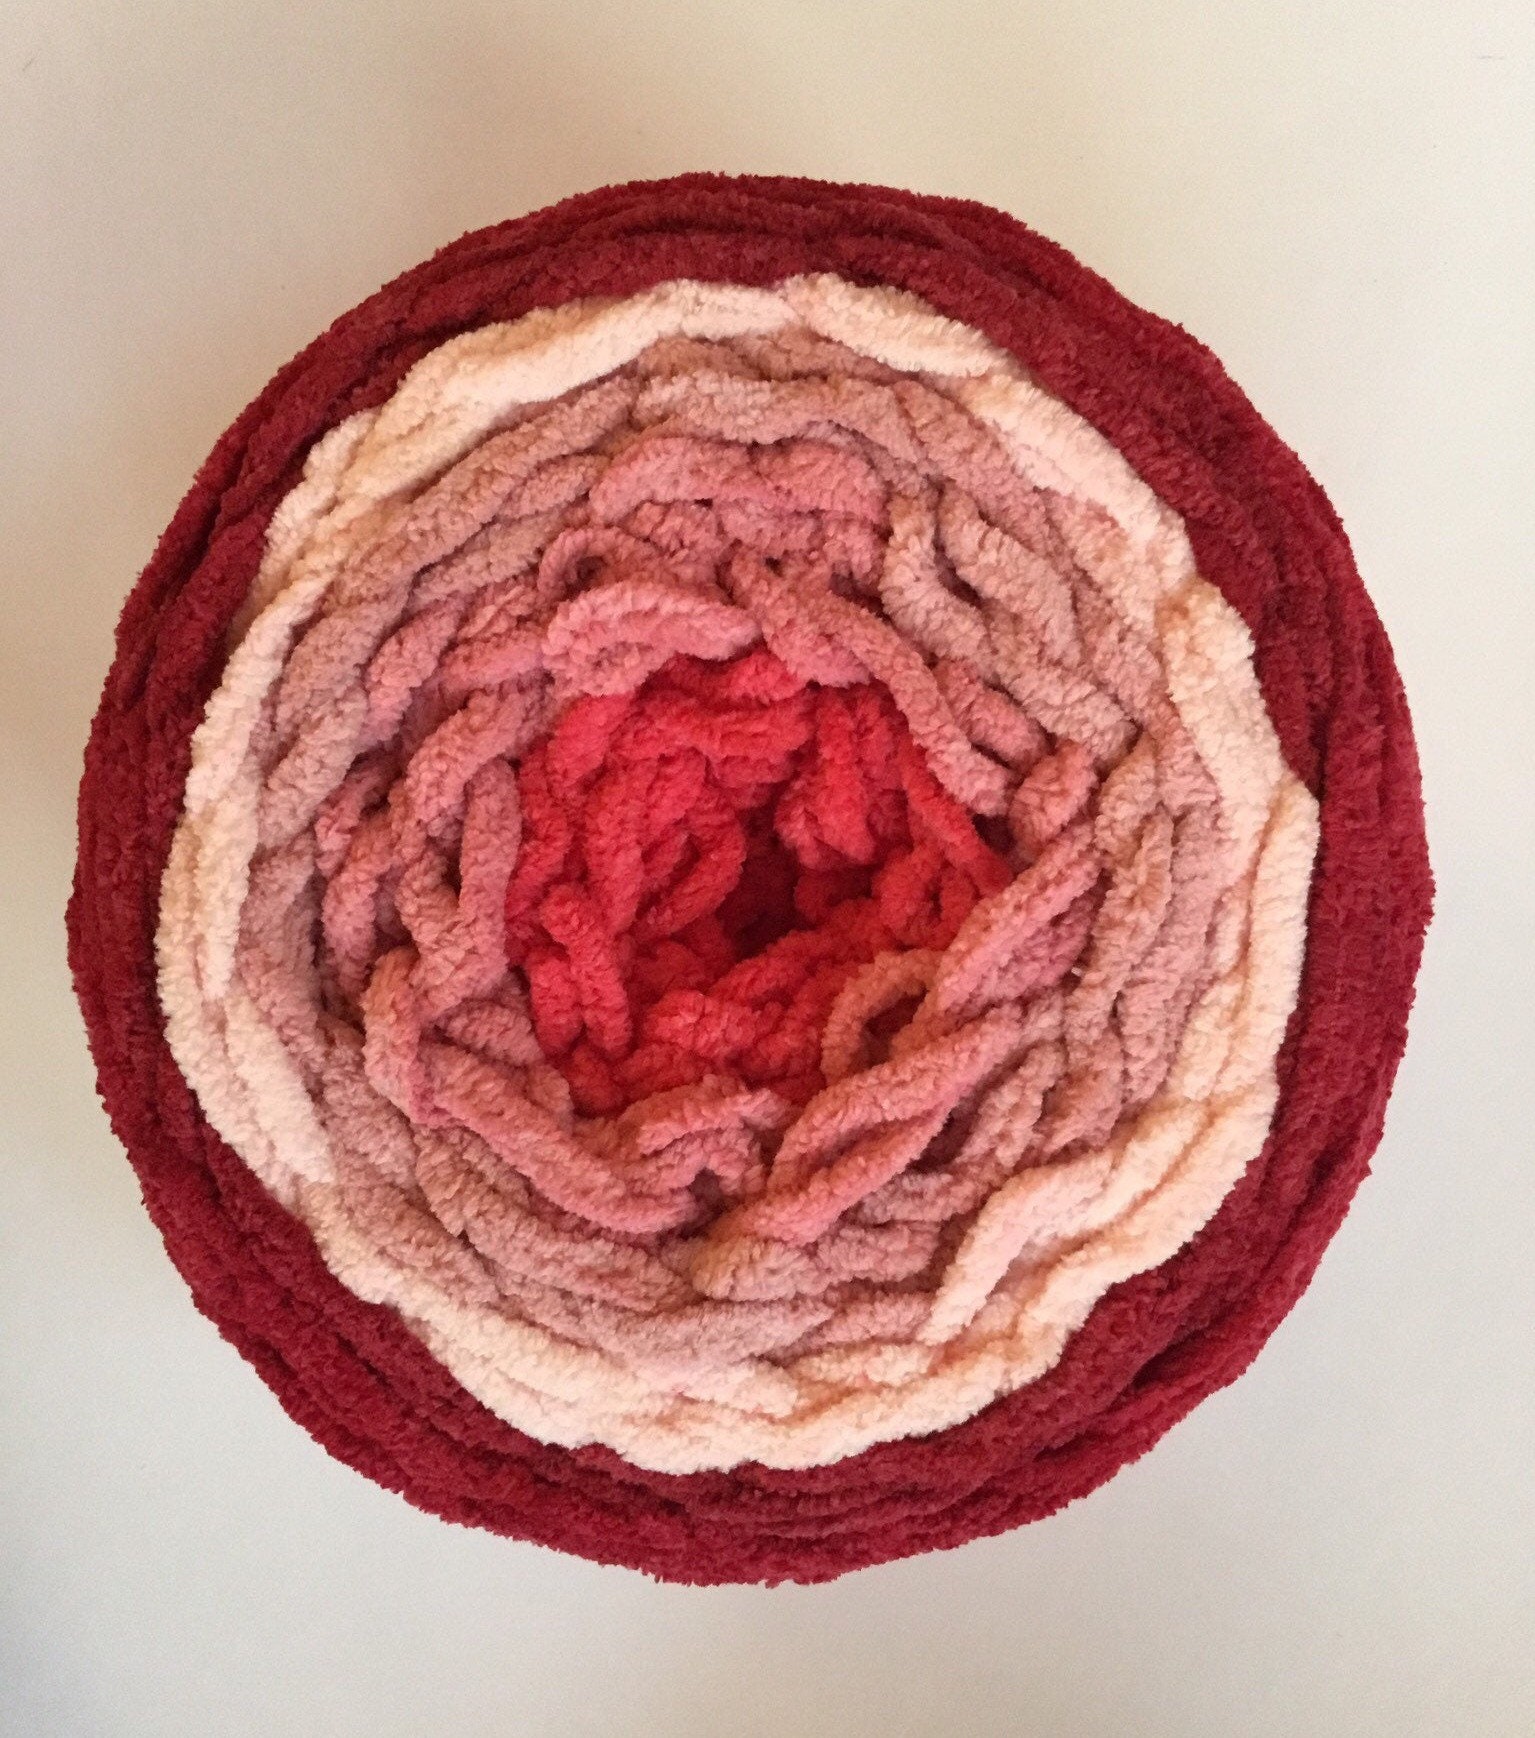 Bernat Blanket Ombre Yarn - Dusty Rose